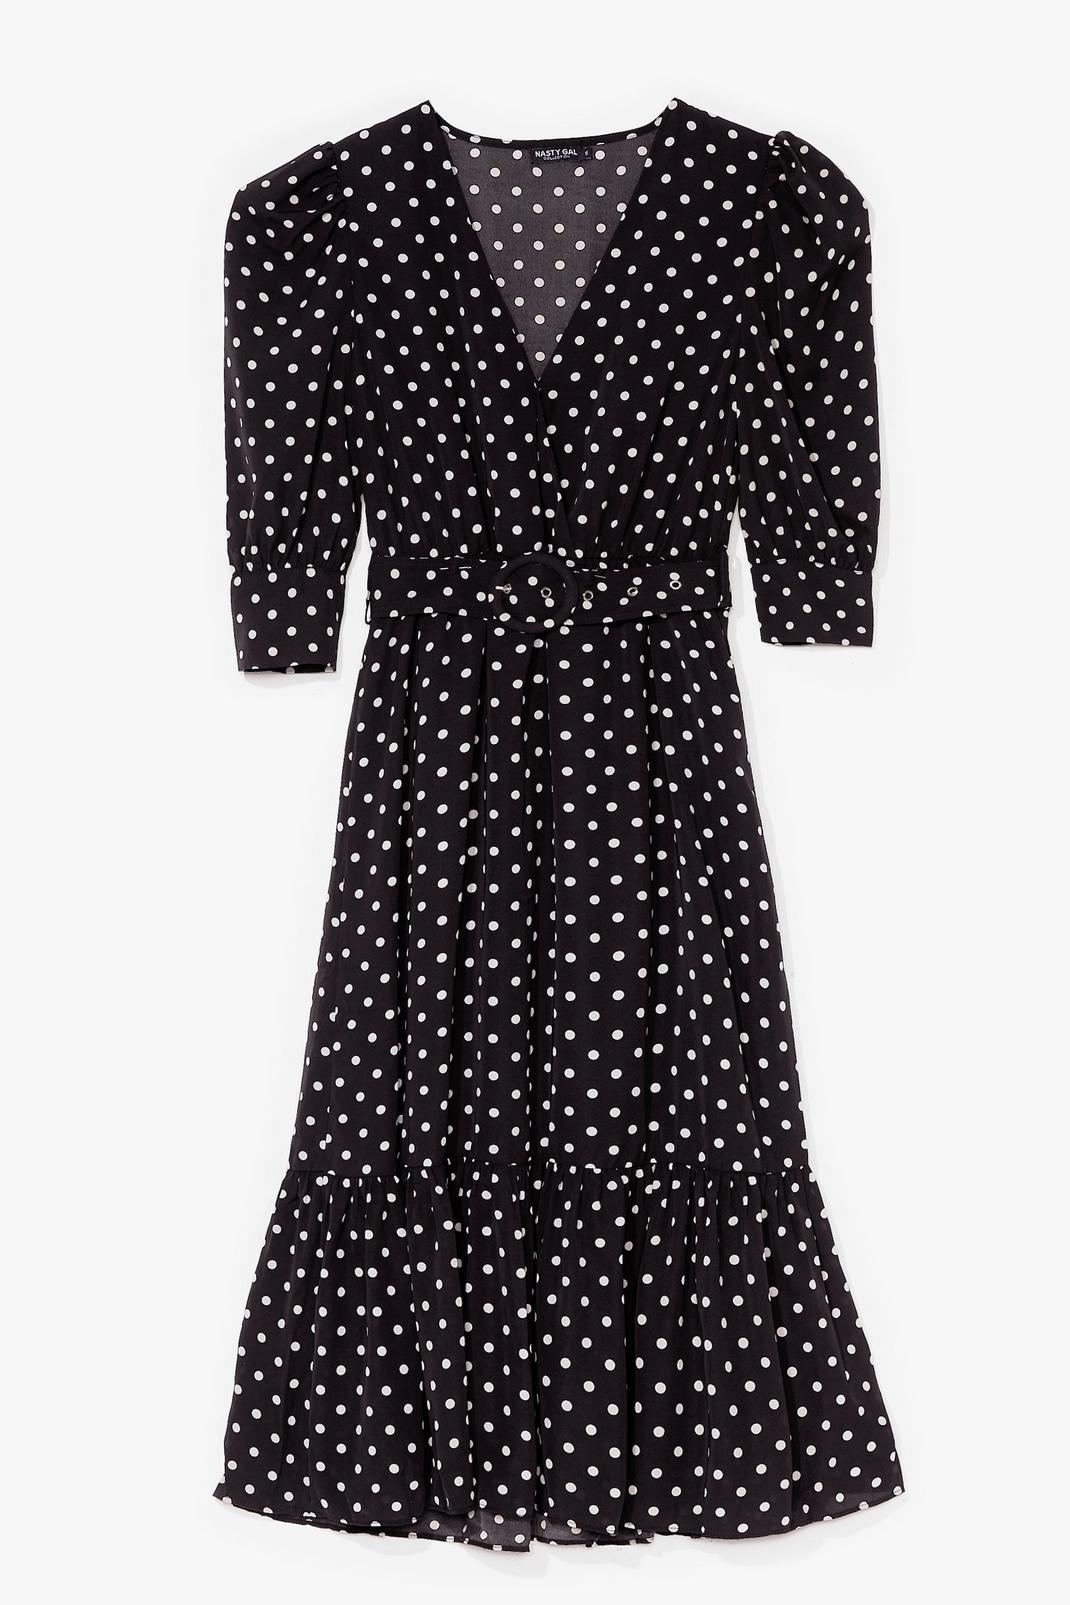 Polka Dot Over You Belted Midi Dress image number 1